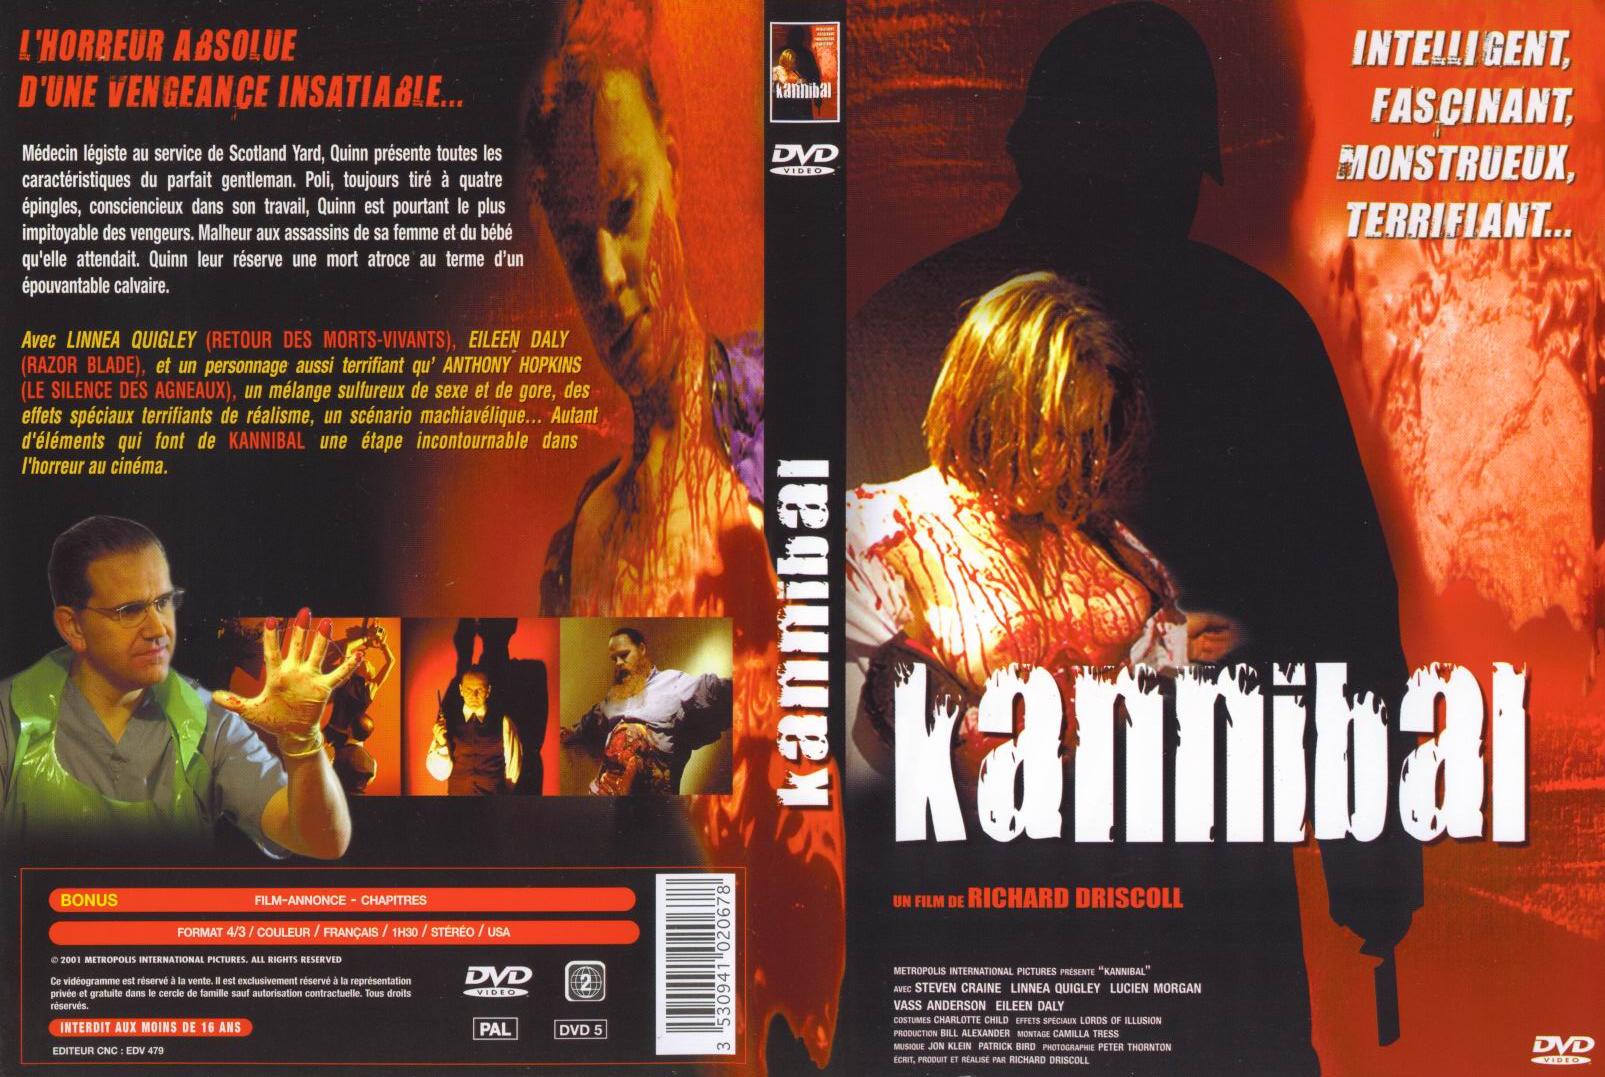 Jaquette DVD Kannibal v2